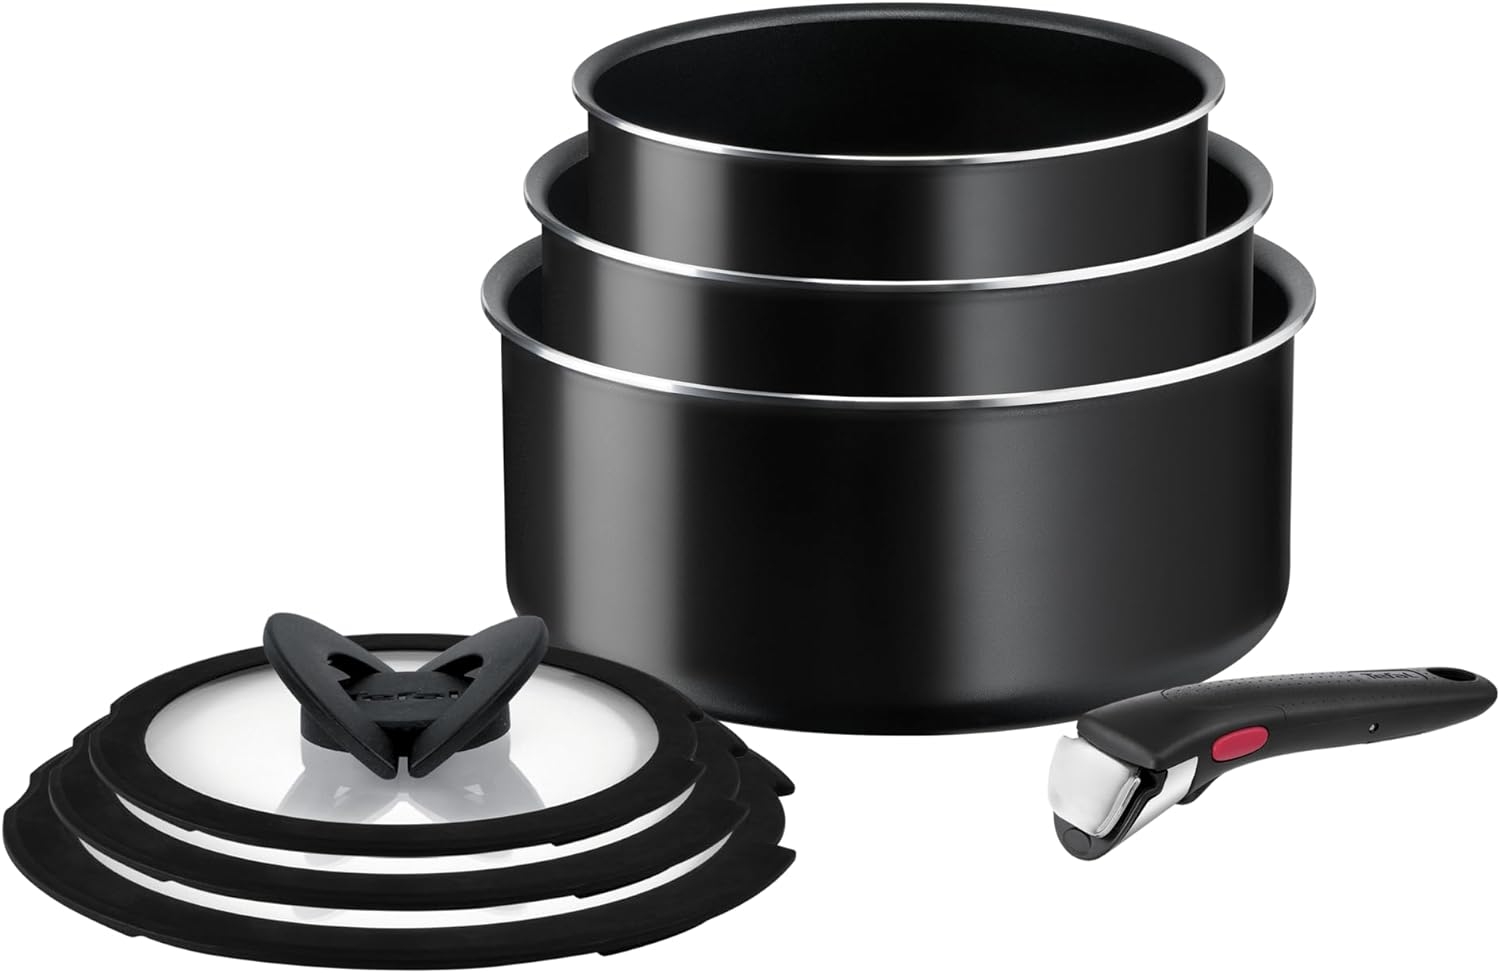  Tefal Cookware Set, Saucepans, Induction, Black, 3 Pc Set :  Home & Kitchen